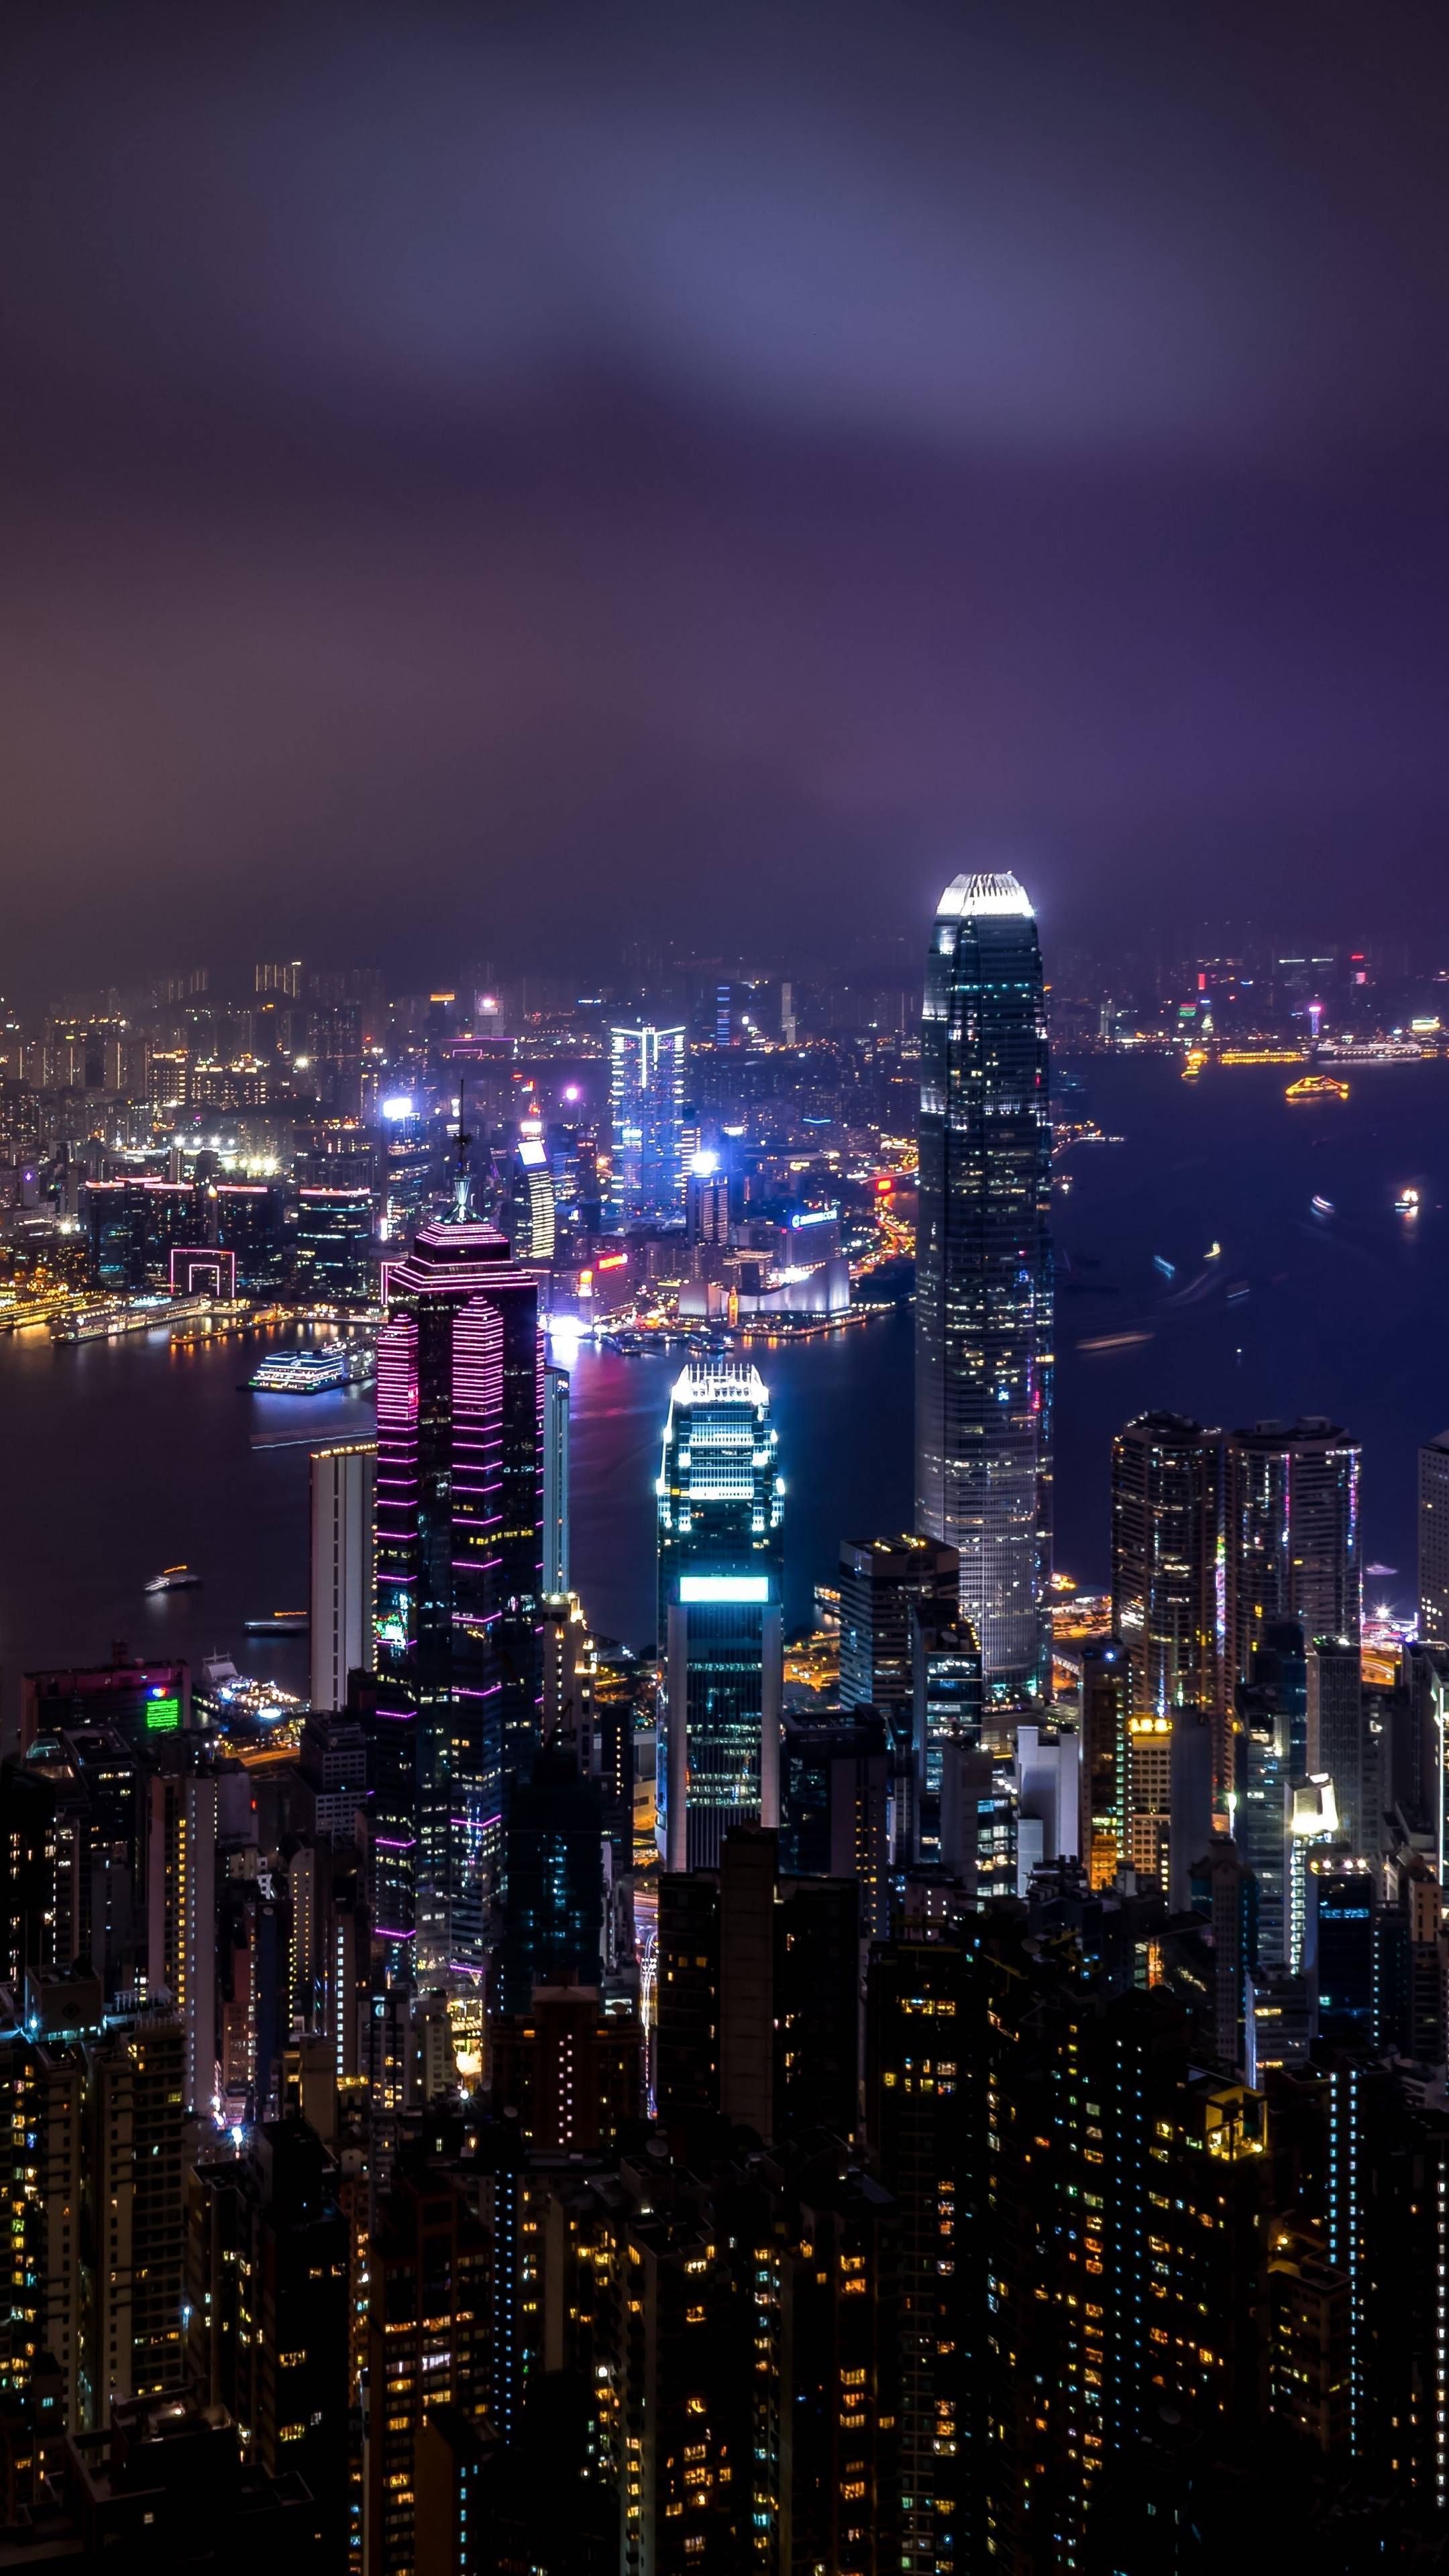 Hong Kong Skyscrapers at Night. City wallpaper, City lights wallpaper, City lights